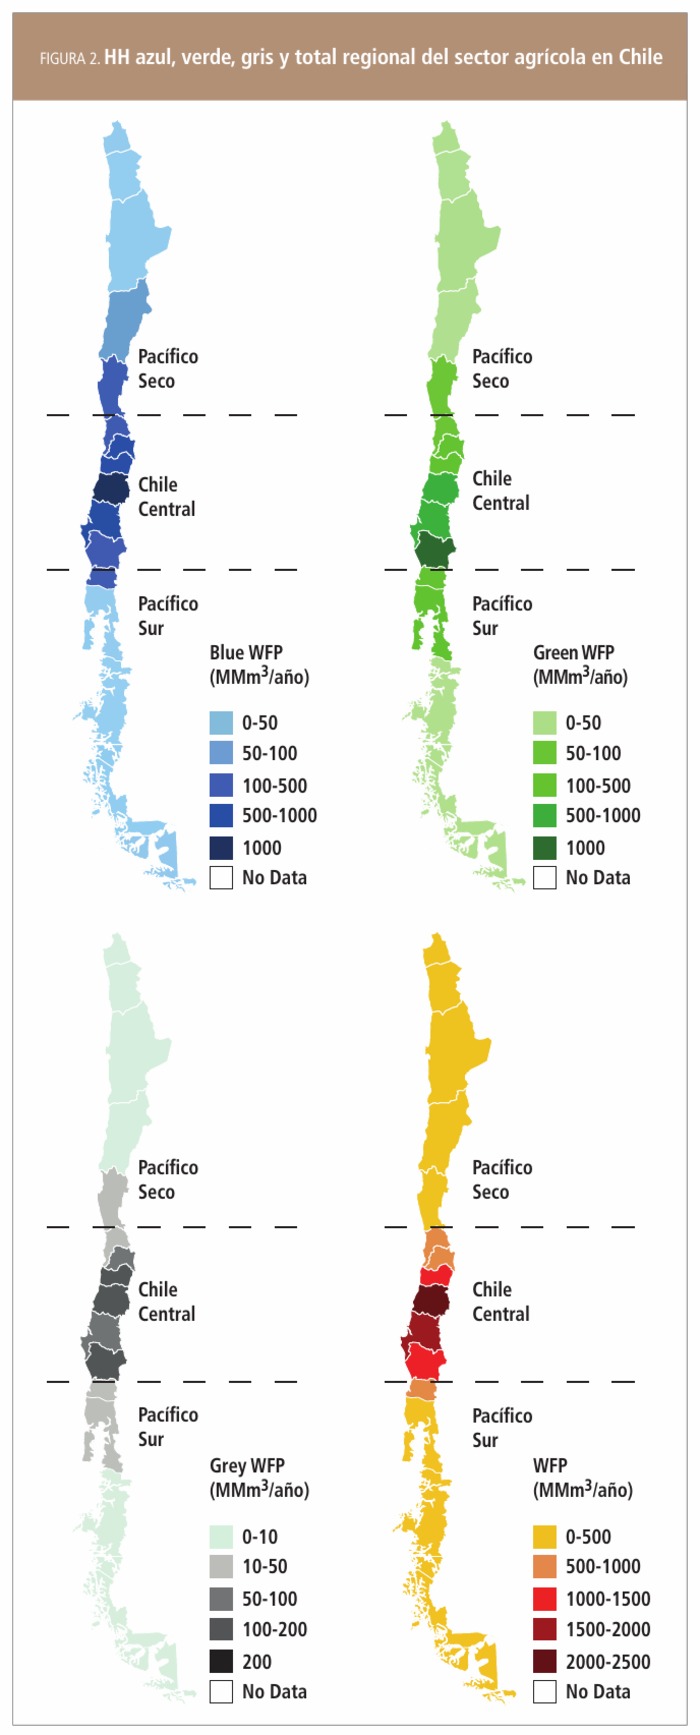 HH azul, verde, gris y total regional del sector agrícola en Chile